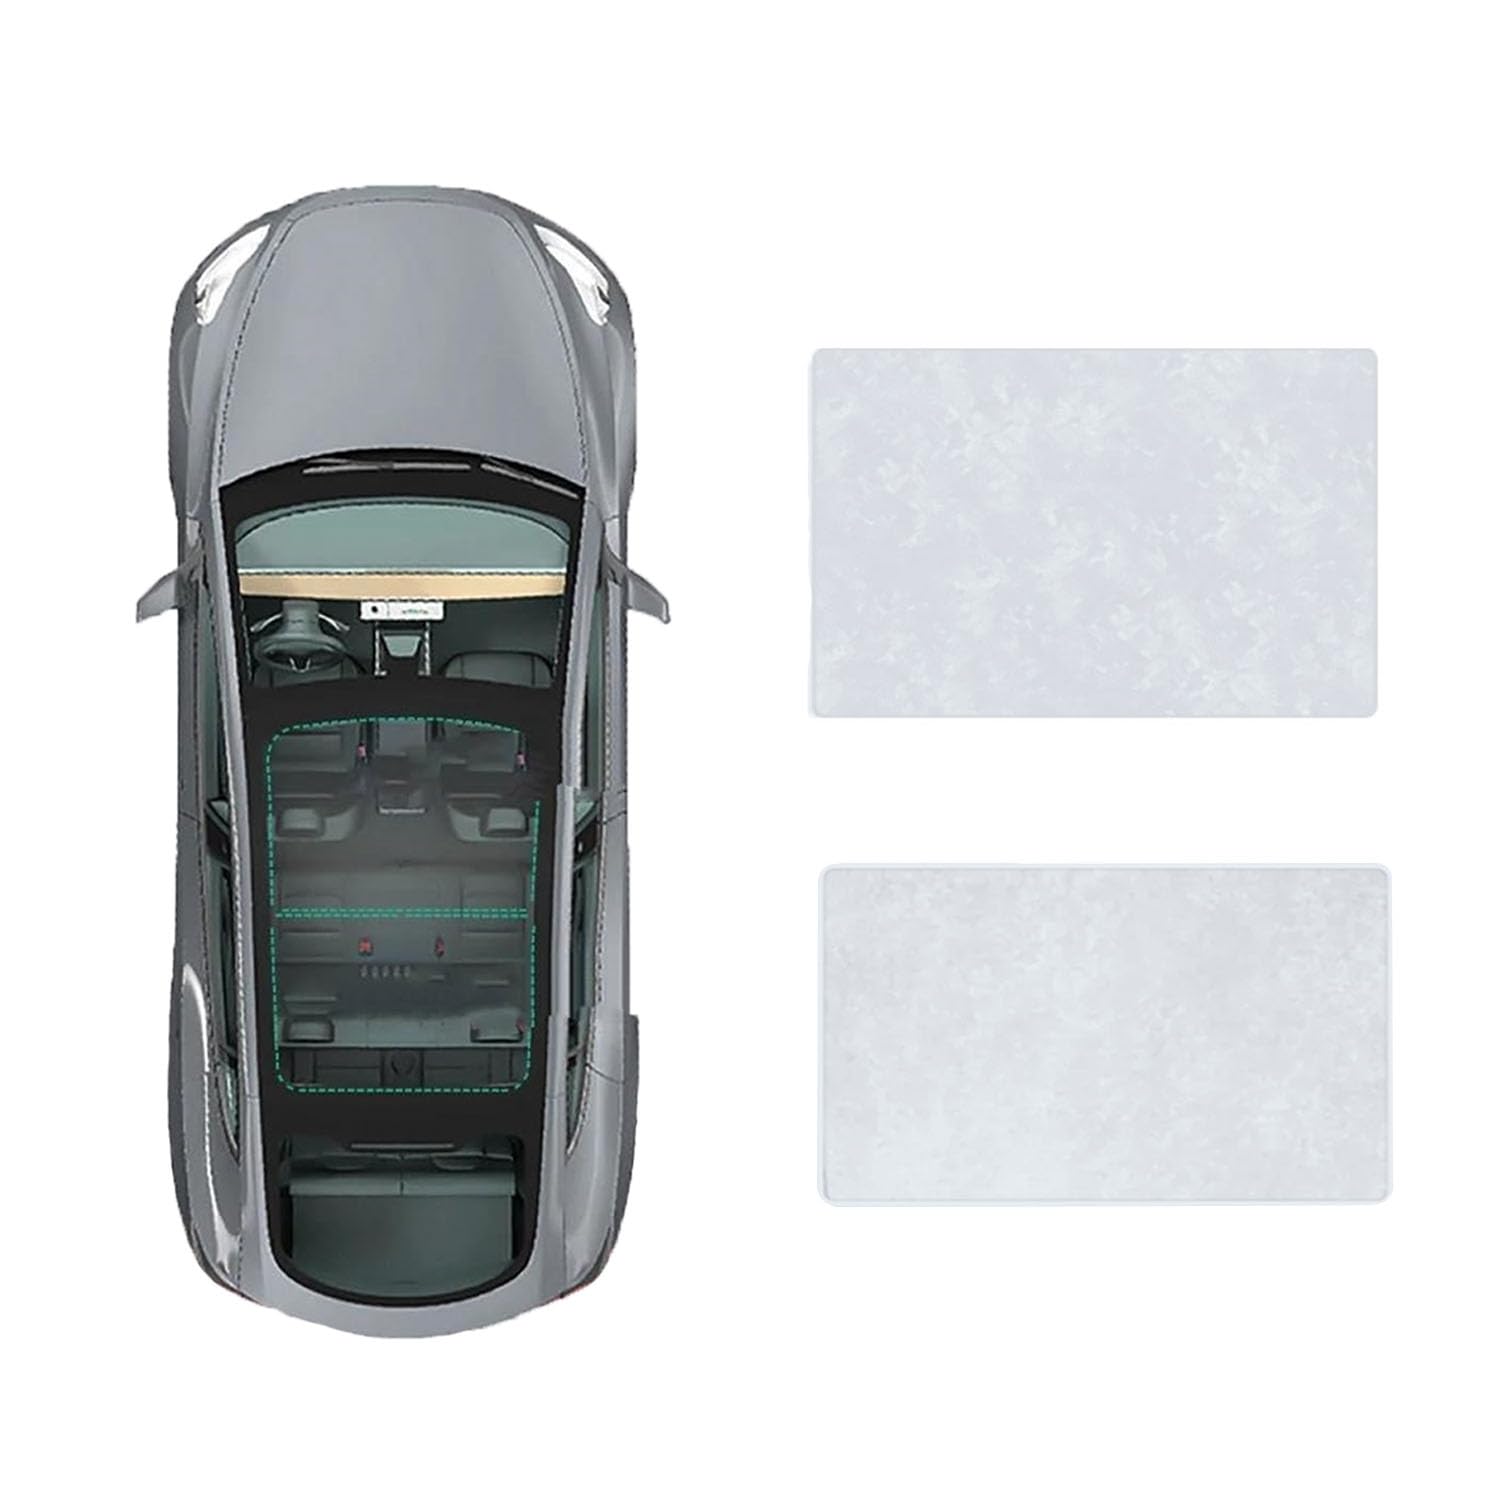 Für Buick Lacrosse 2010-2022 Auto-Schiebedach-Beschattung,Dach Wärme Isolierung Anti-UV Visier Auto Zubehör,B-Gray white Suede von ANRAM